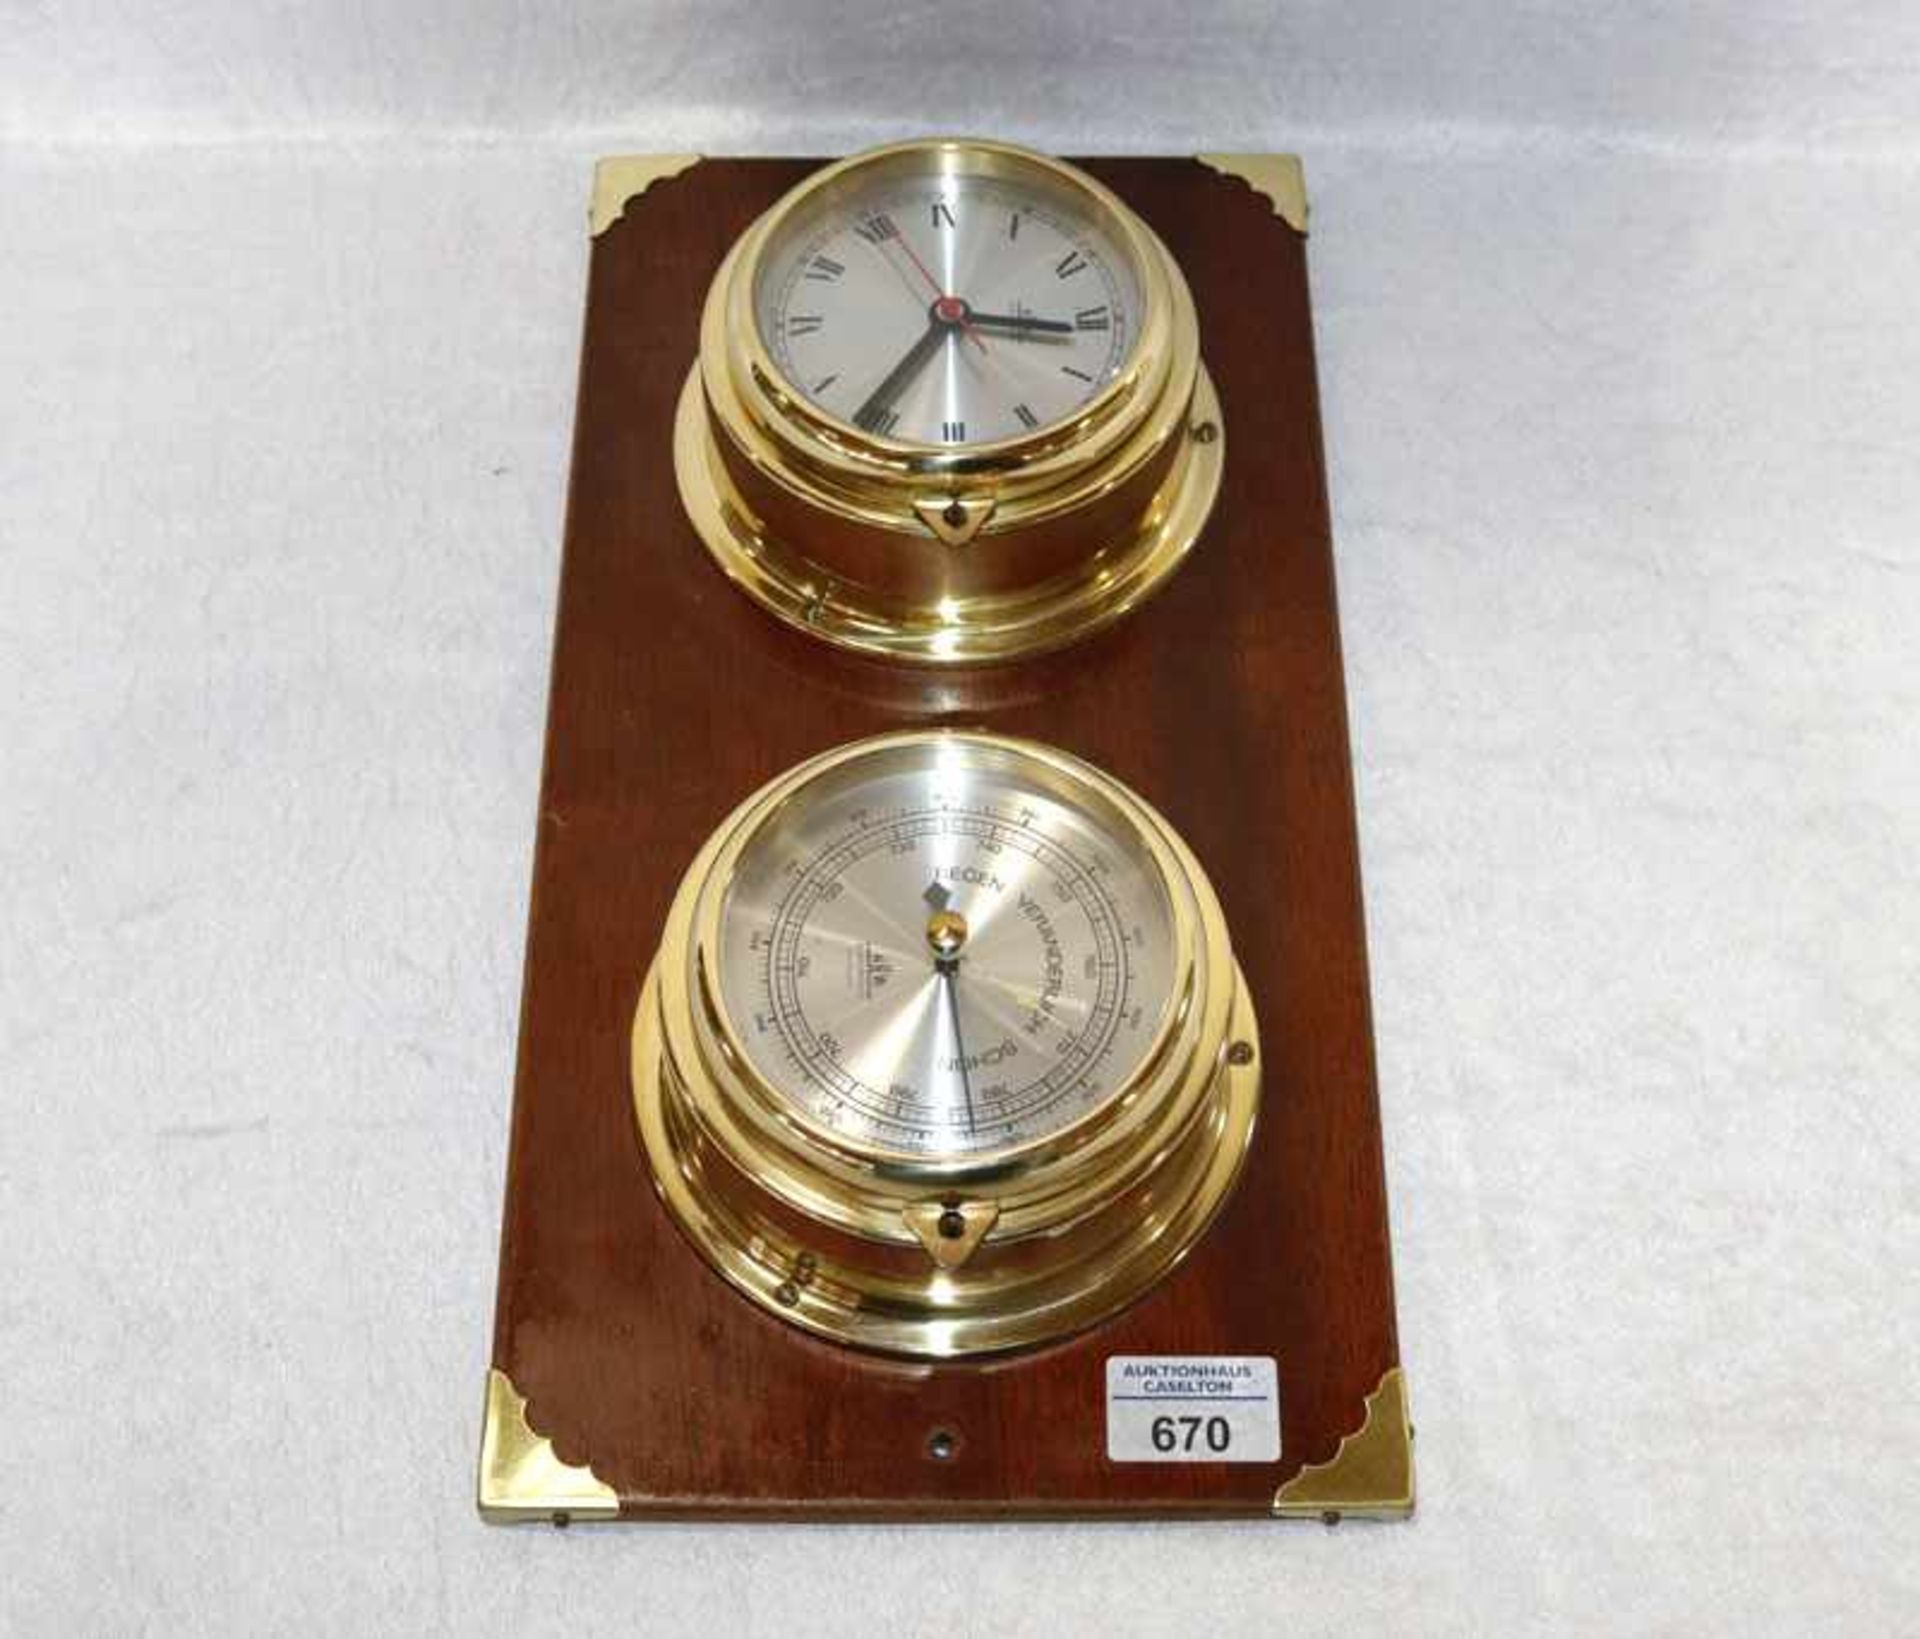 Barometer und Uhr in Messingehäuse in maritinem Stil auf Holz montiert, H 20 cm, B 40 cm, T 10 cm,